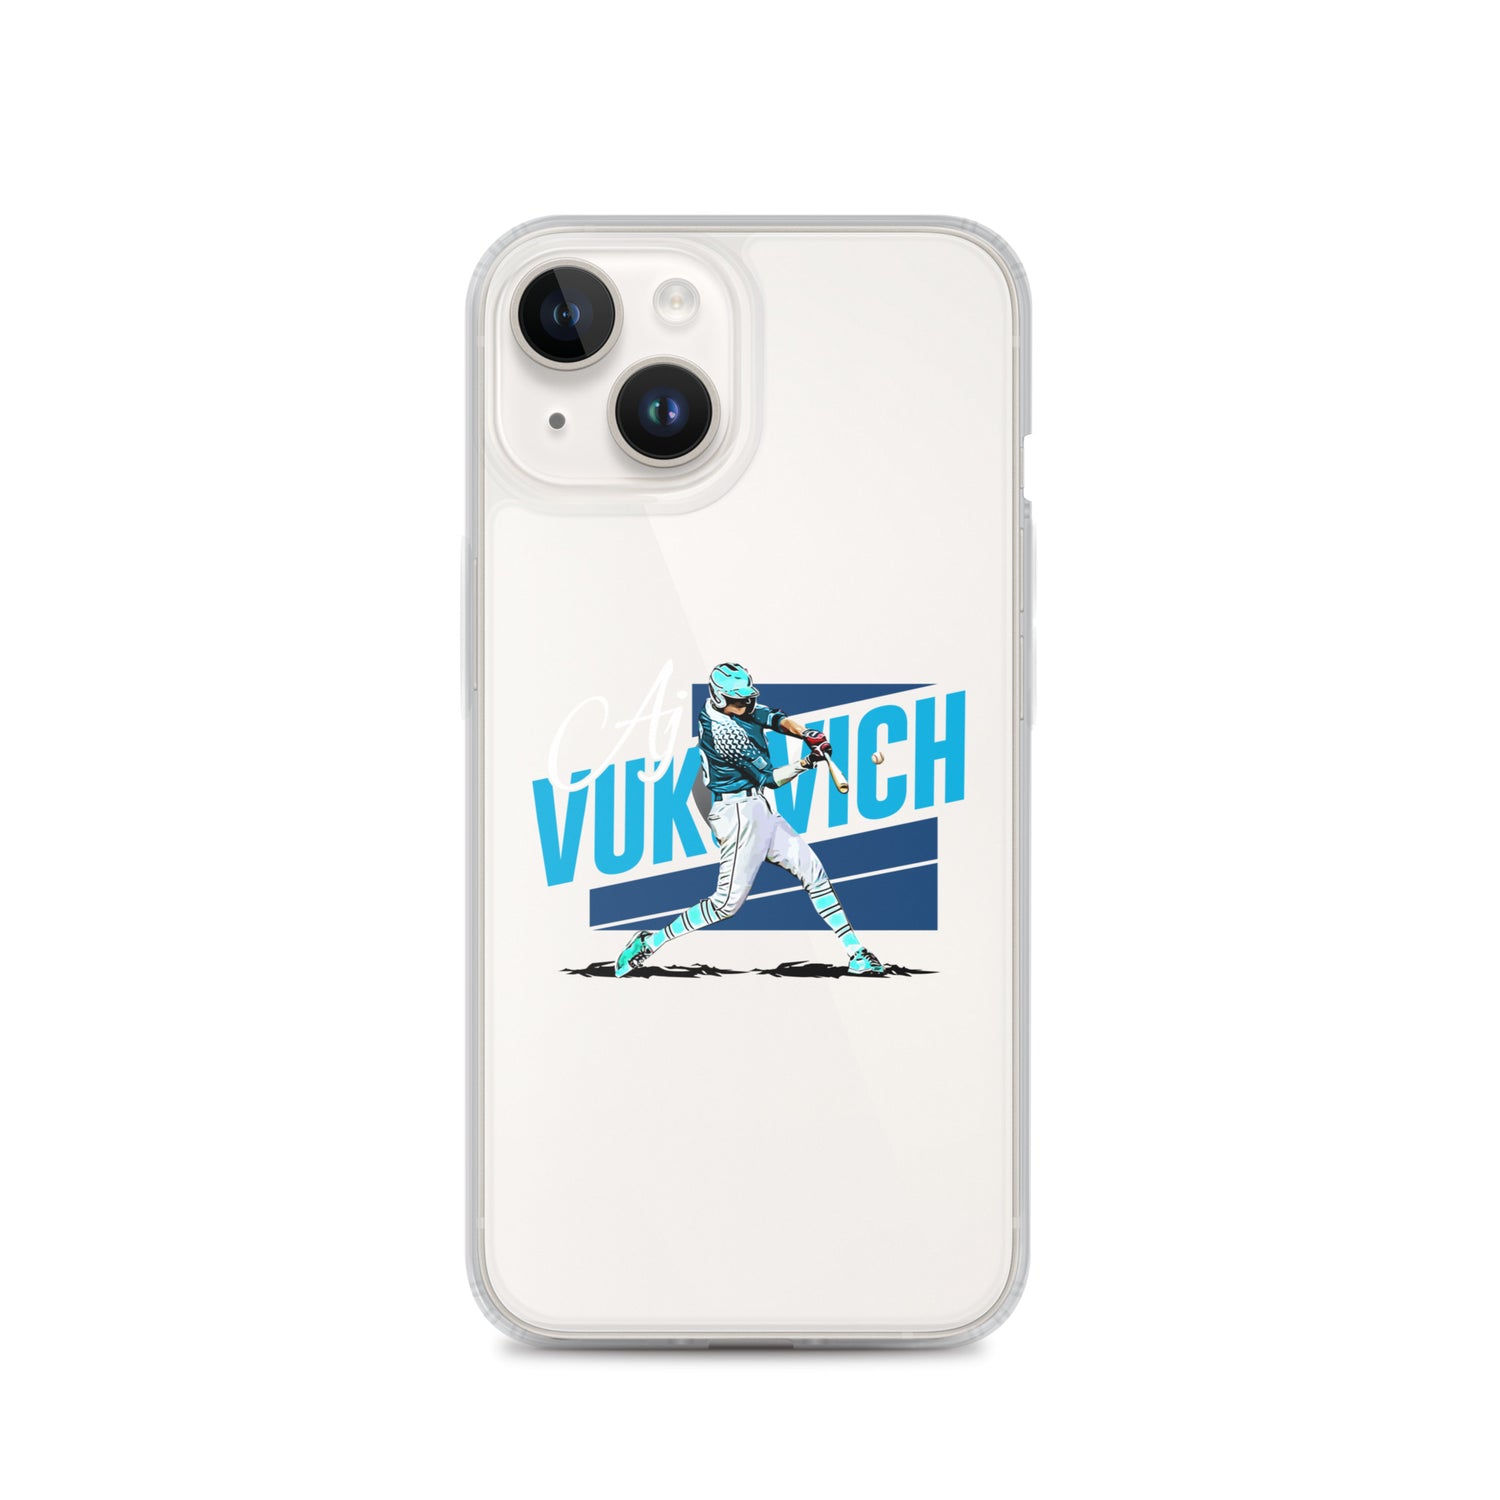 AJ Vukovich "Icon" iPhone® - Fan Arch